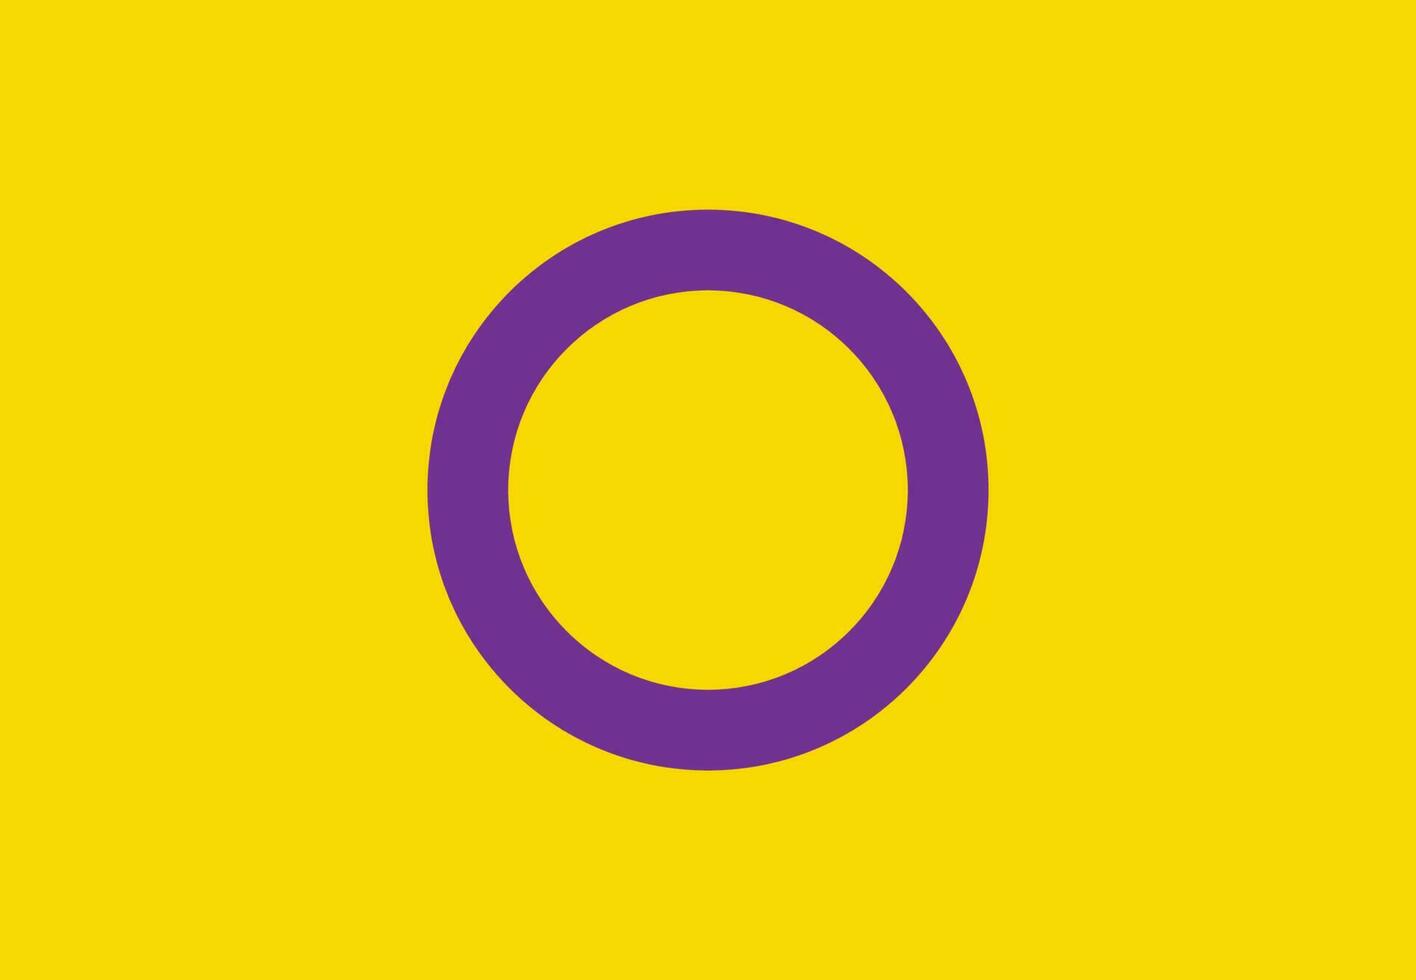 intersessualità orgoglio bandiera vettore